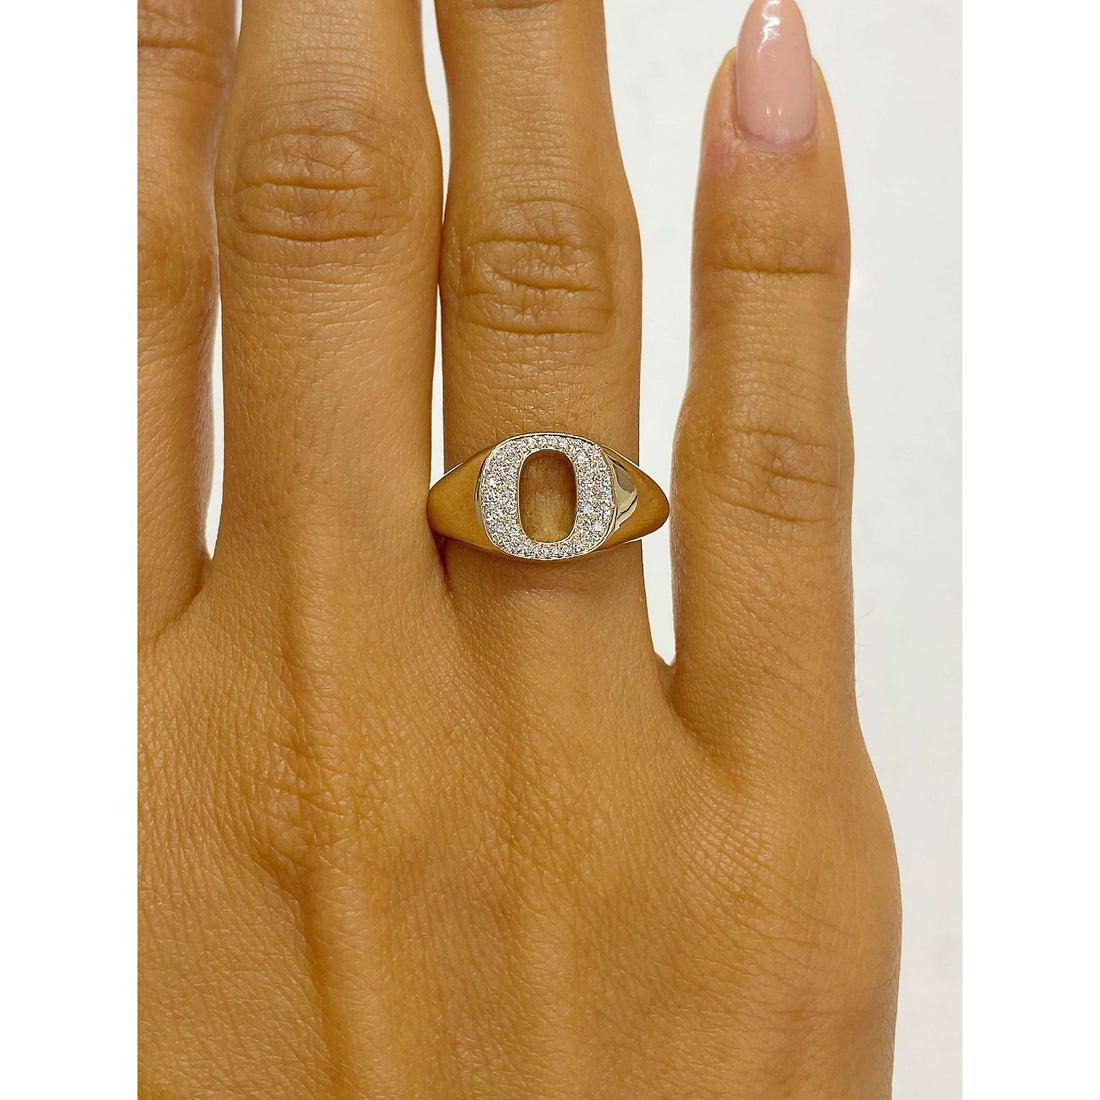 University of Oregon O Diamond Ring modeled